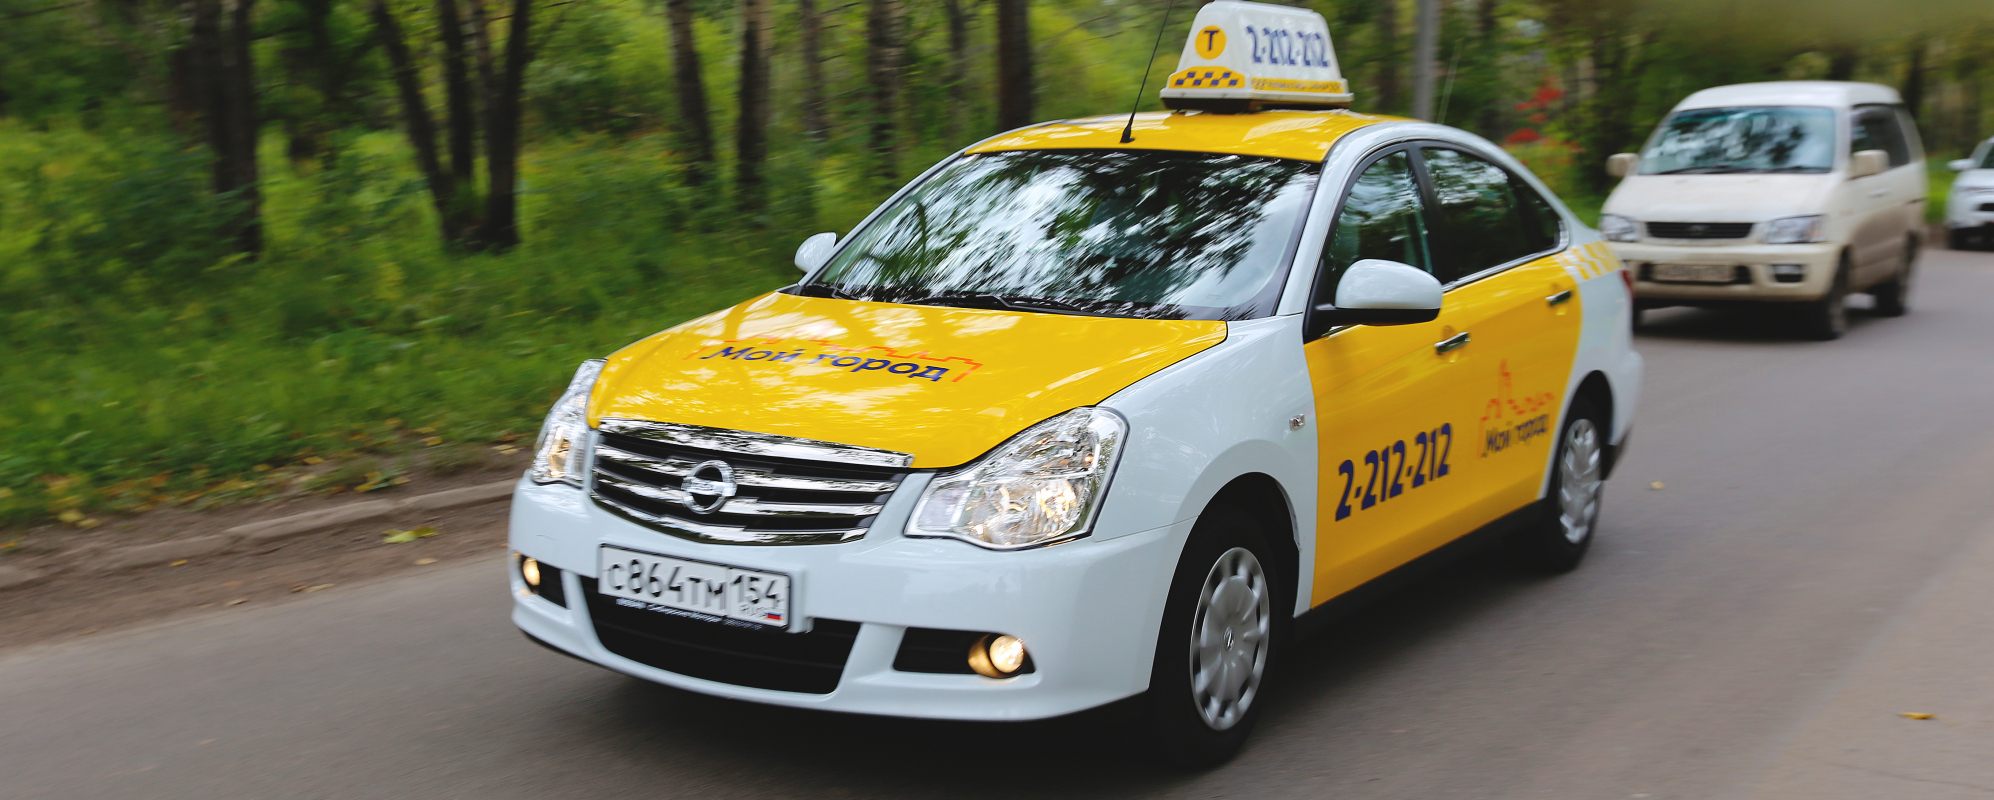 Телефоны такси города красноярска. Такси Новосибирск. Такси в городе. Машина такси в городе. Такси за город.